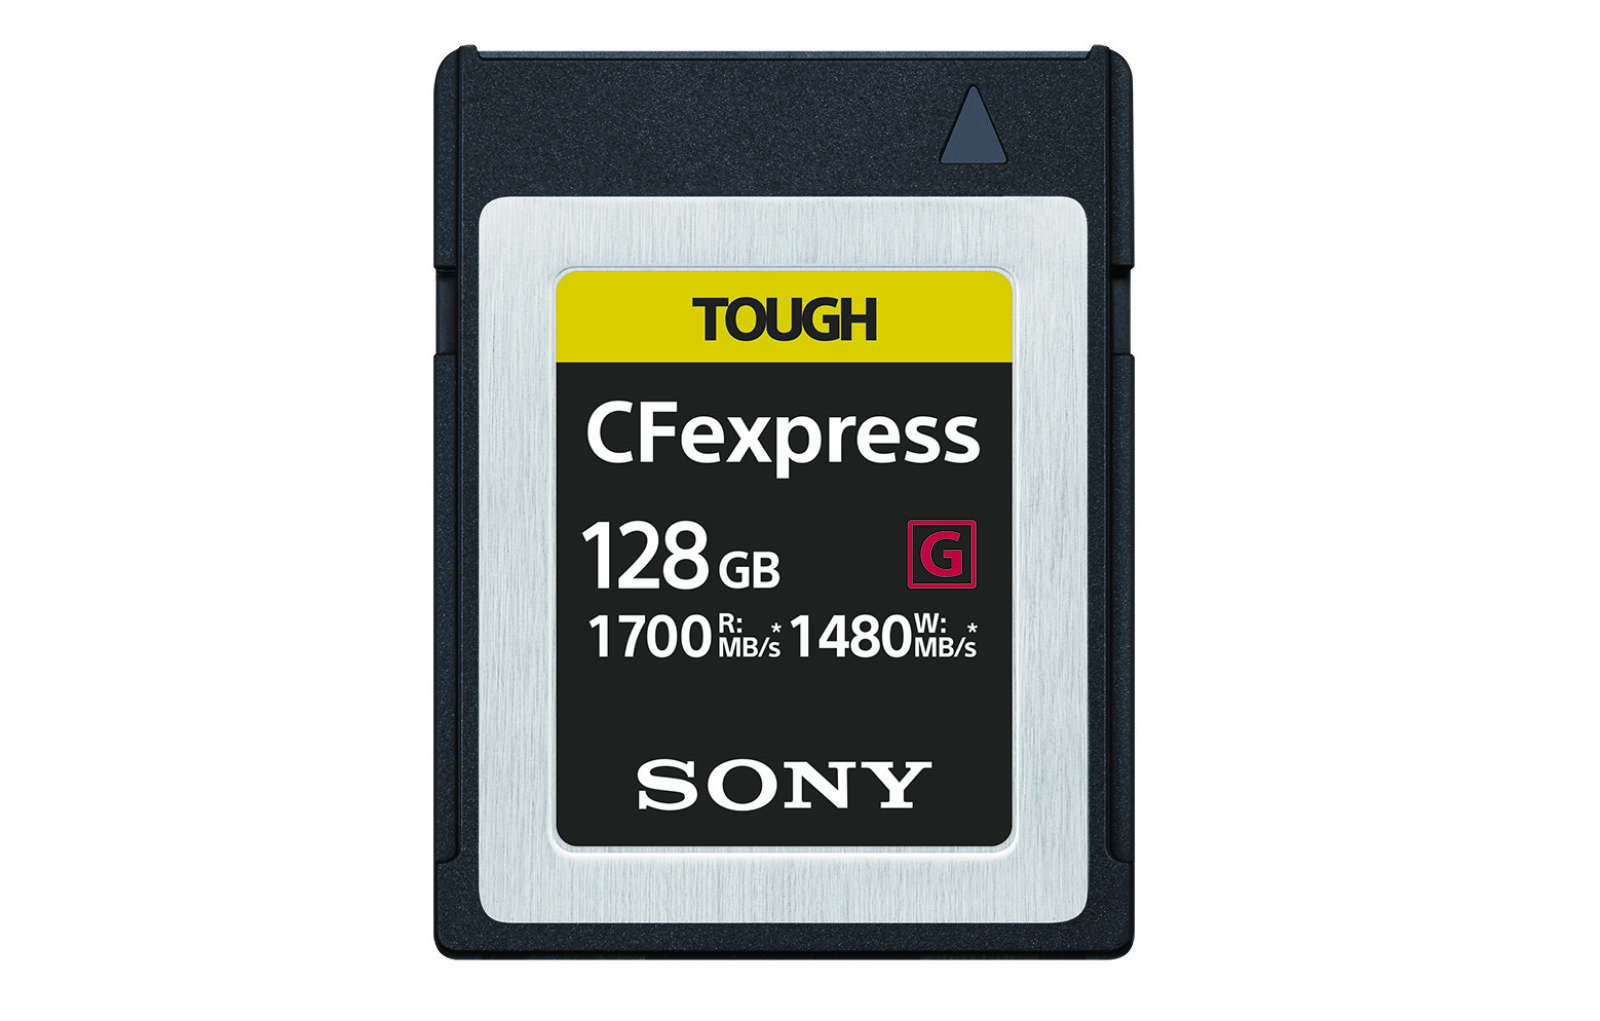 Sony CFexpress hafıza kartları 1.7GBps hızlarına çıkabiliyor